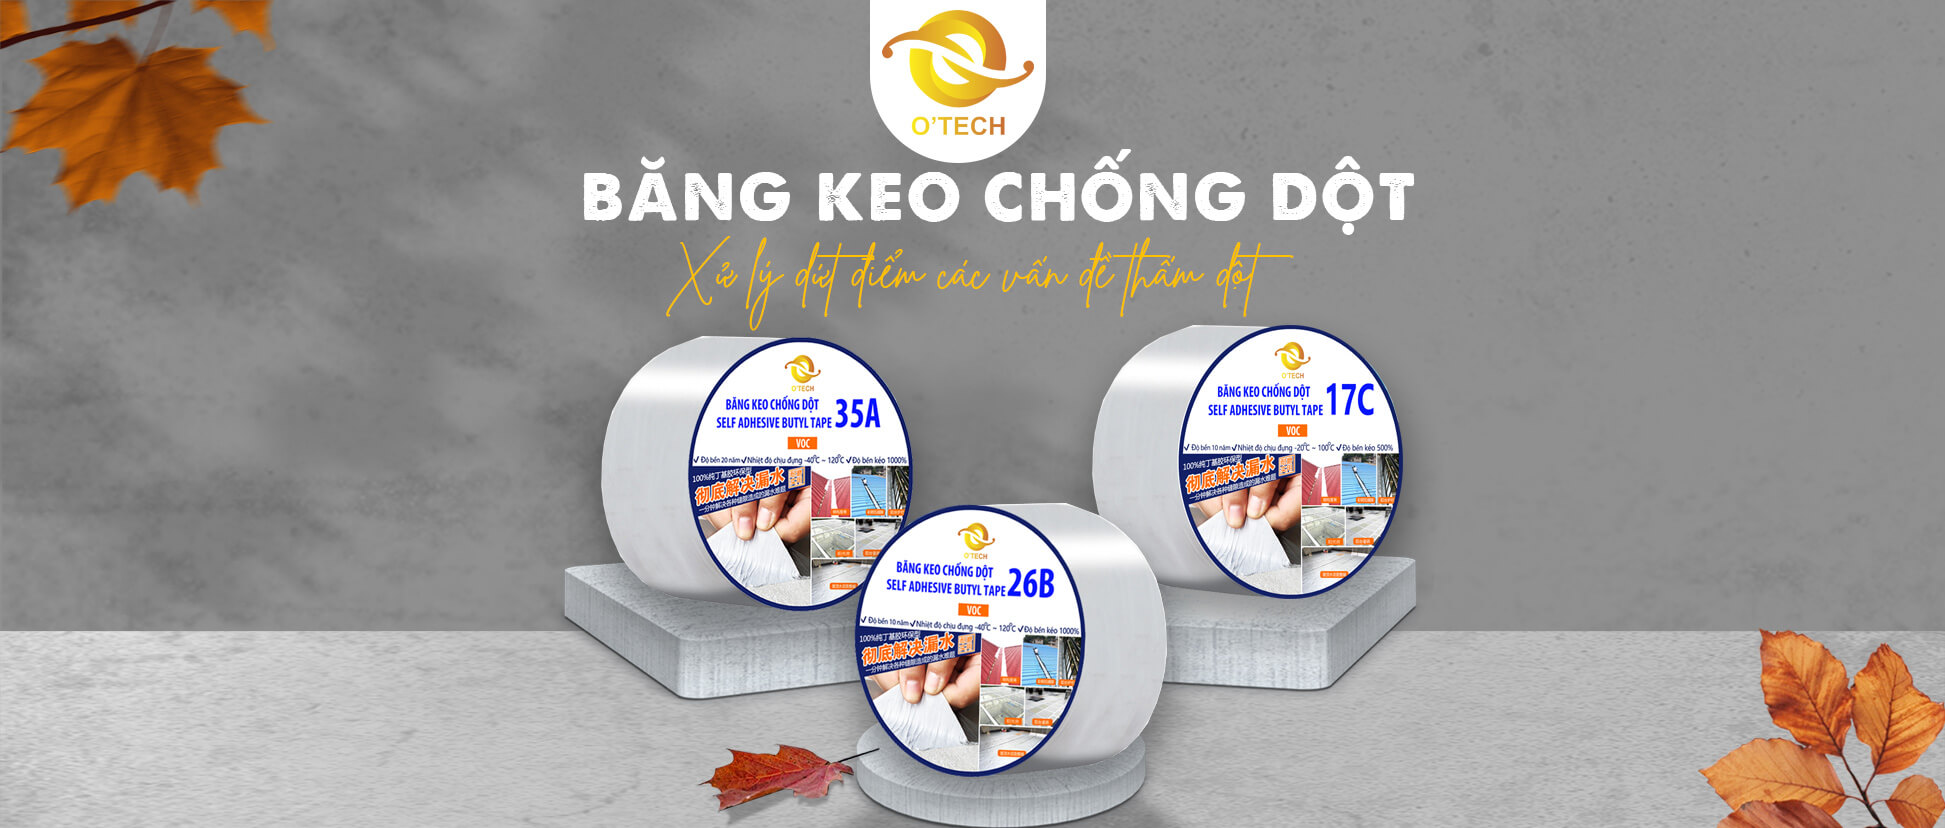 Banner Bang Keo Chong Dot Chong Tham